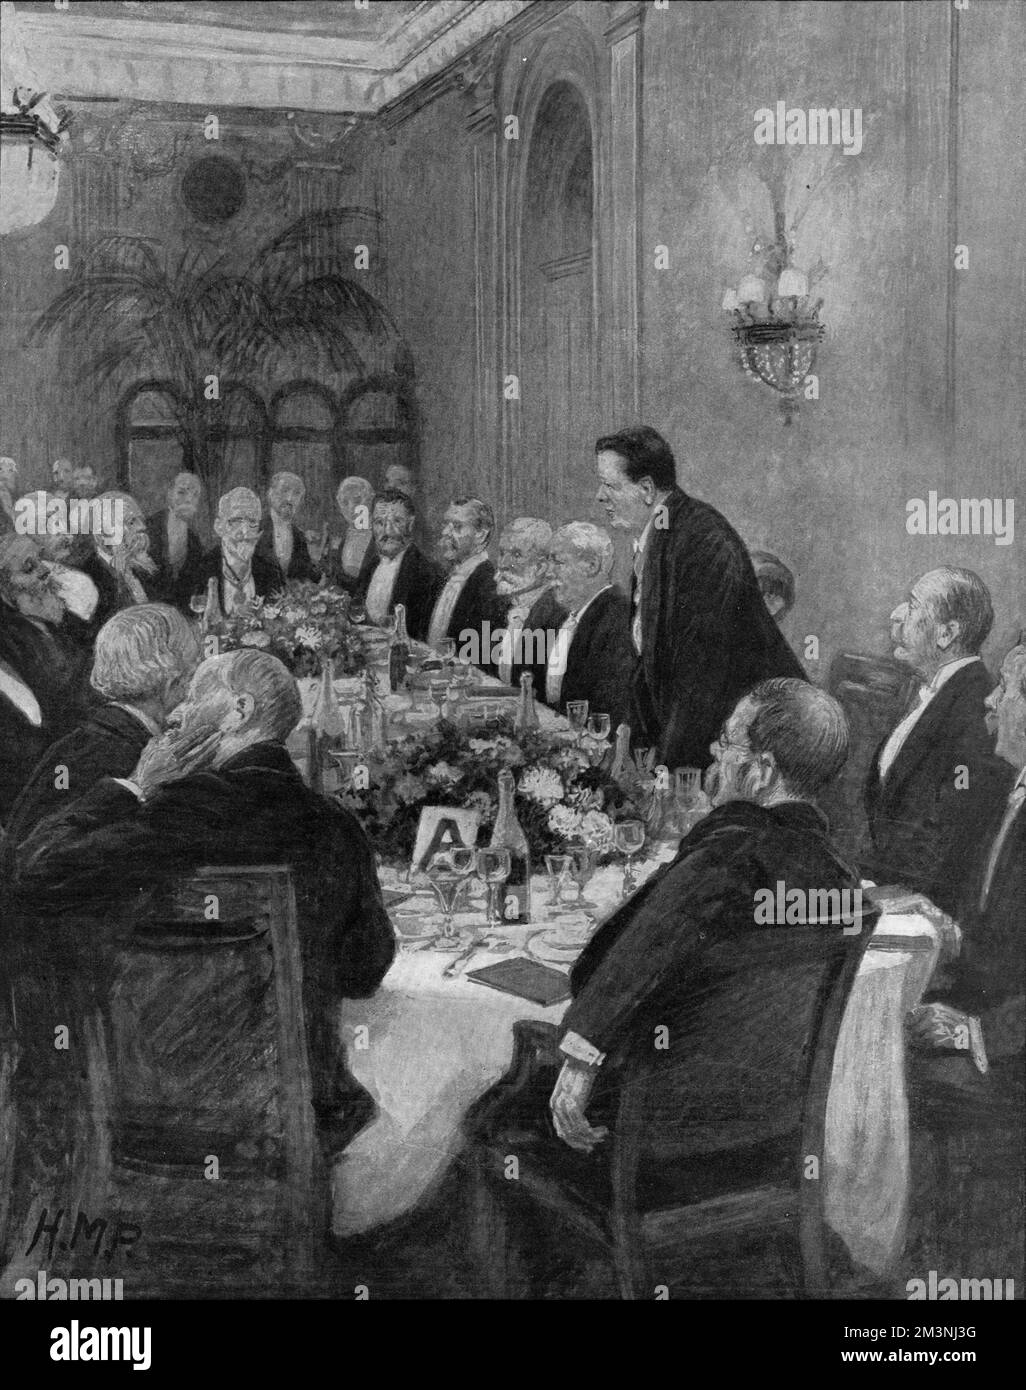 Ein wissenschaftliches Dinner-Symposium im Savoy Hotel in London im Jahr 1910. Das Bild zeigt den Herausgeber der Enzyklopädie Britannica Sir E. Ray Lankester auf seinen Füßen mit Sir William Crookes, Sir James Crichton-Brown, Sir Lauder Brunton und dem Earl of Cromer. Datum: Dezember 3. 1910 Stockfoto